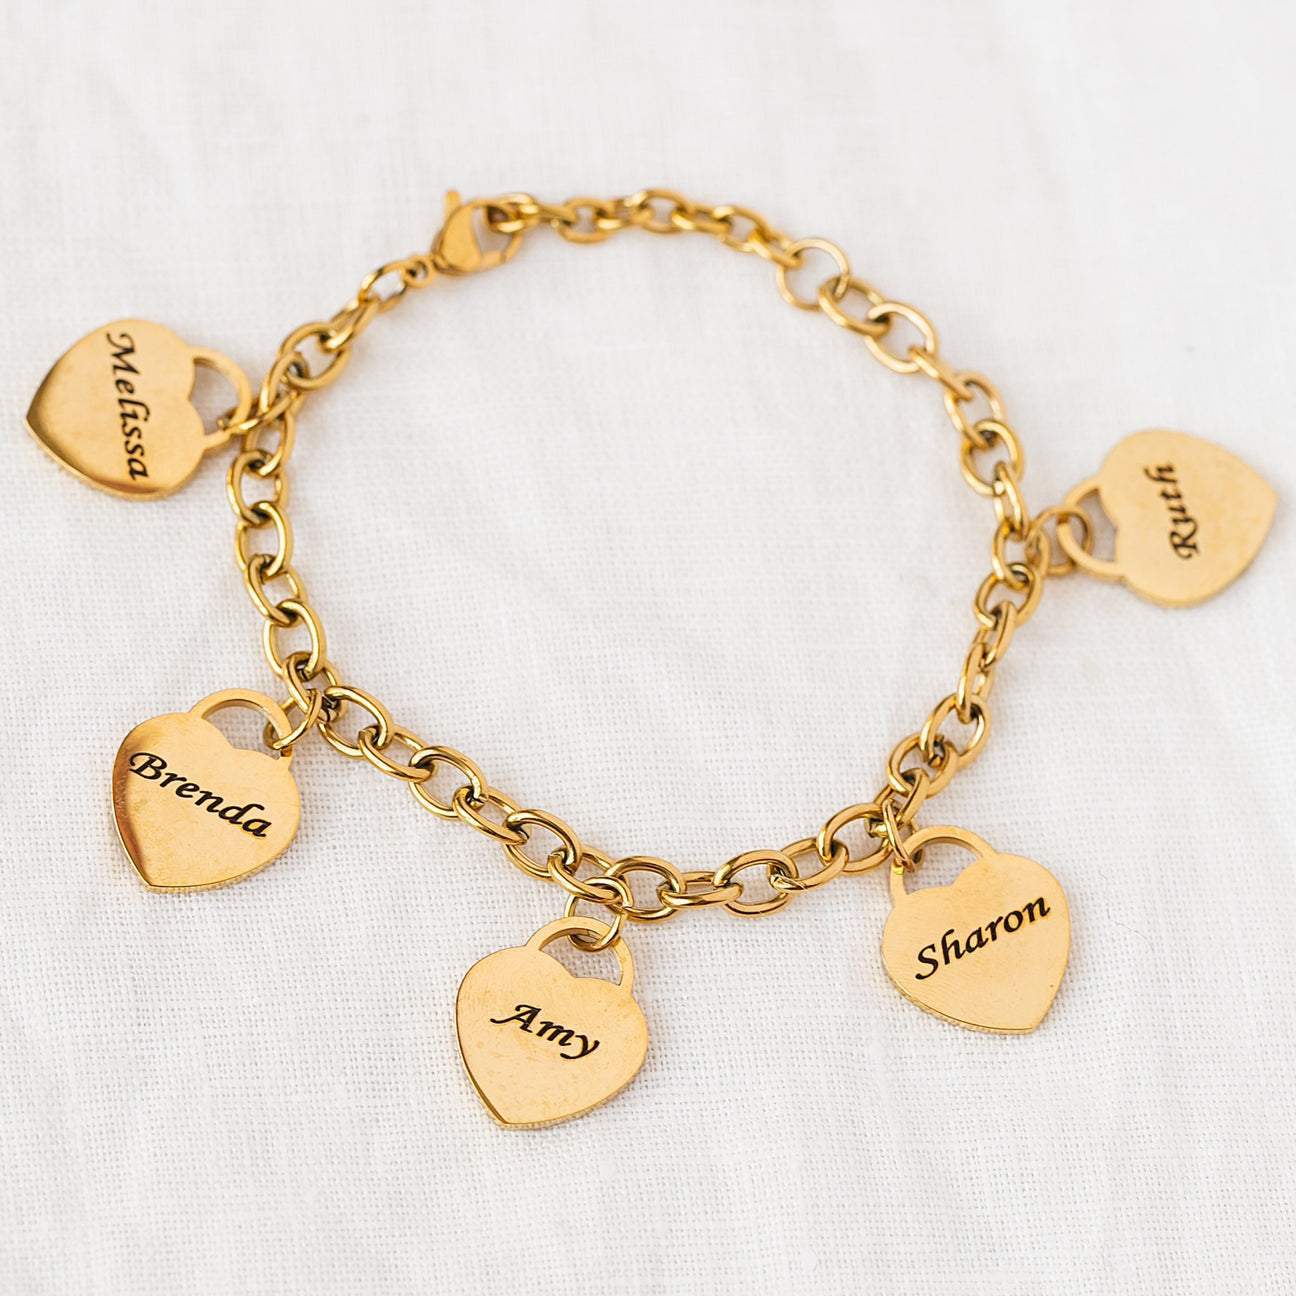 Forever Love: Engraved Bracelet